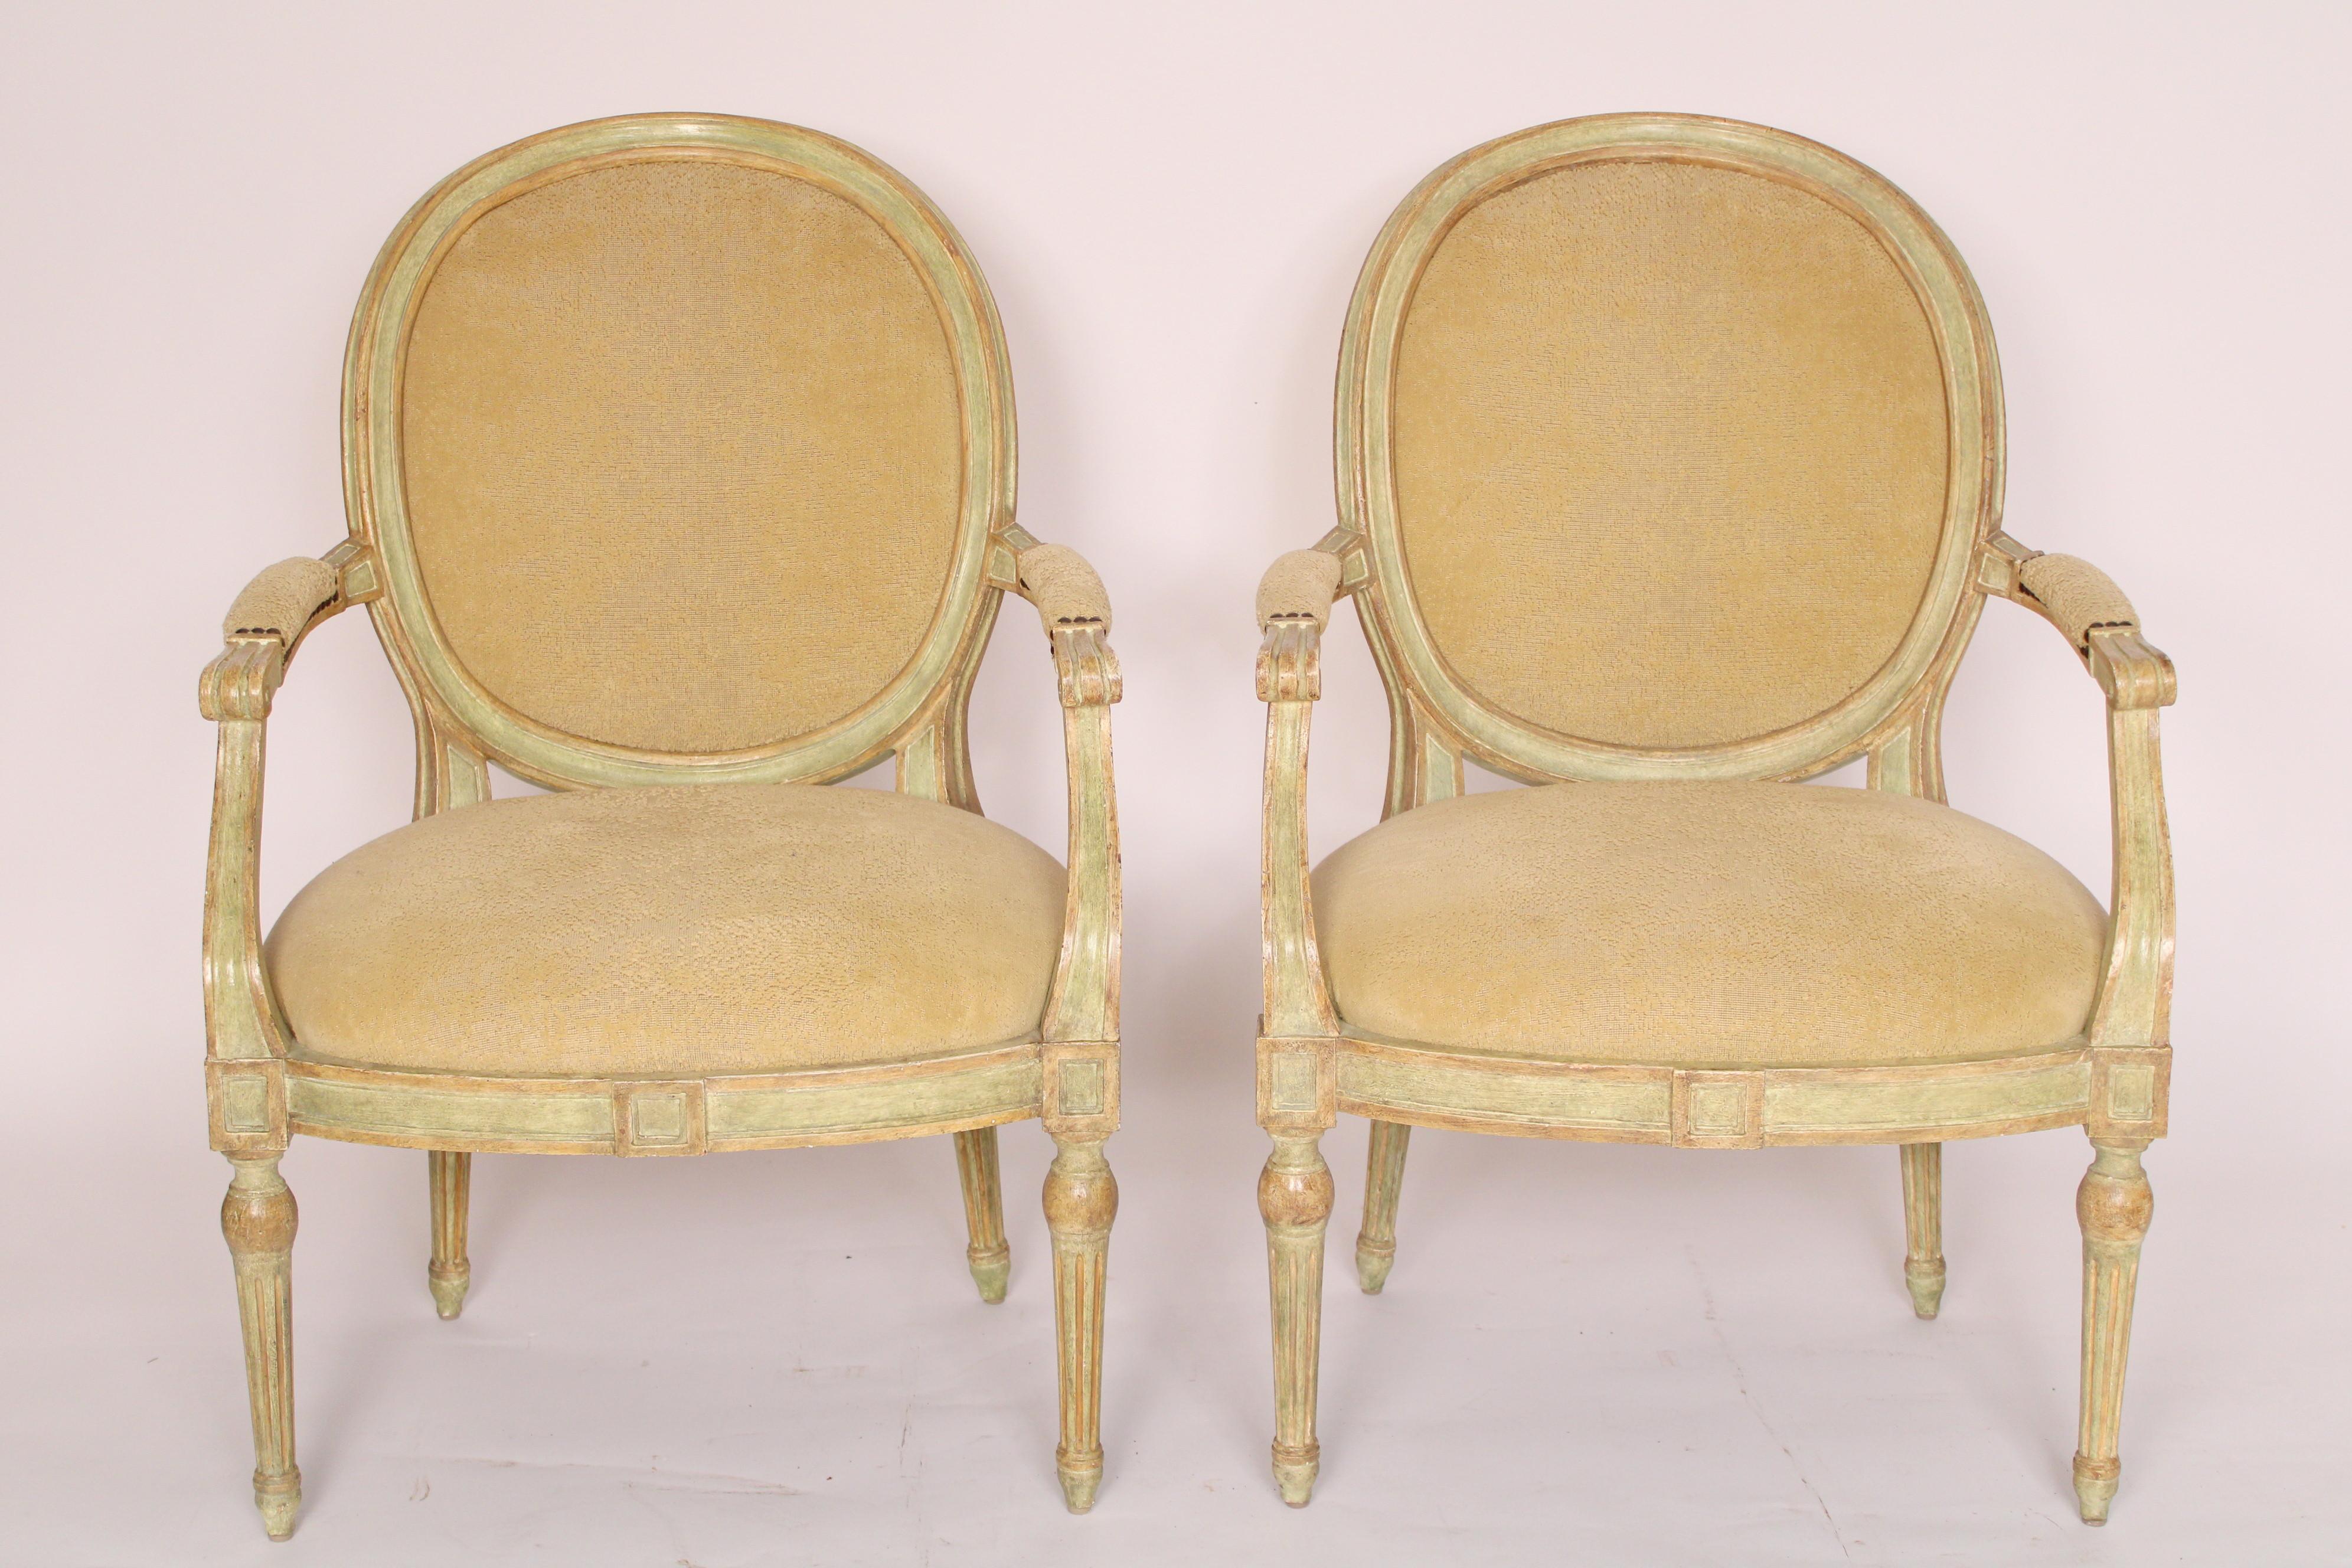 Paire de fauteuils italiens de style néoclassique peints en vert, fabriqués par Dennis and Leen, vers le début du 21e siècle. La face arrière des dossiers est recouverte d'un cuir très souple. Les dimensions du siège sont approximativement de 22,5